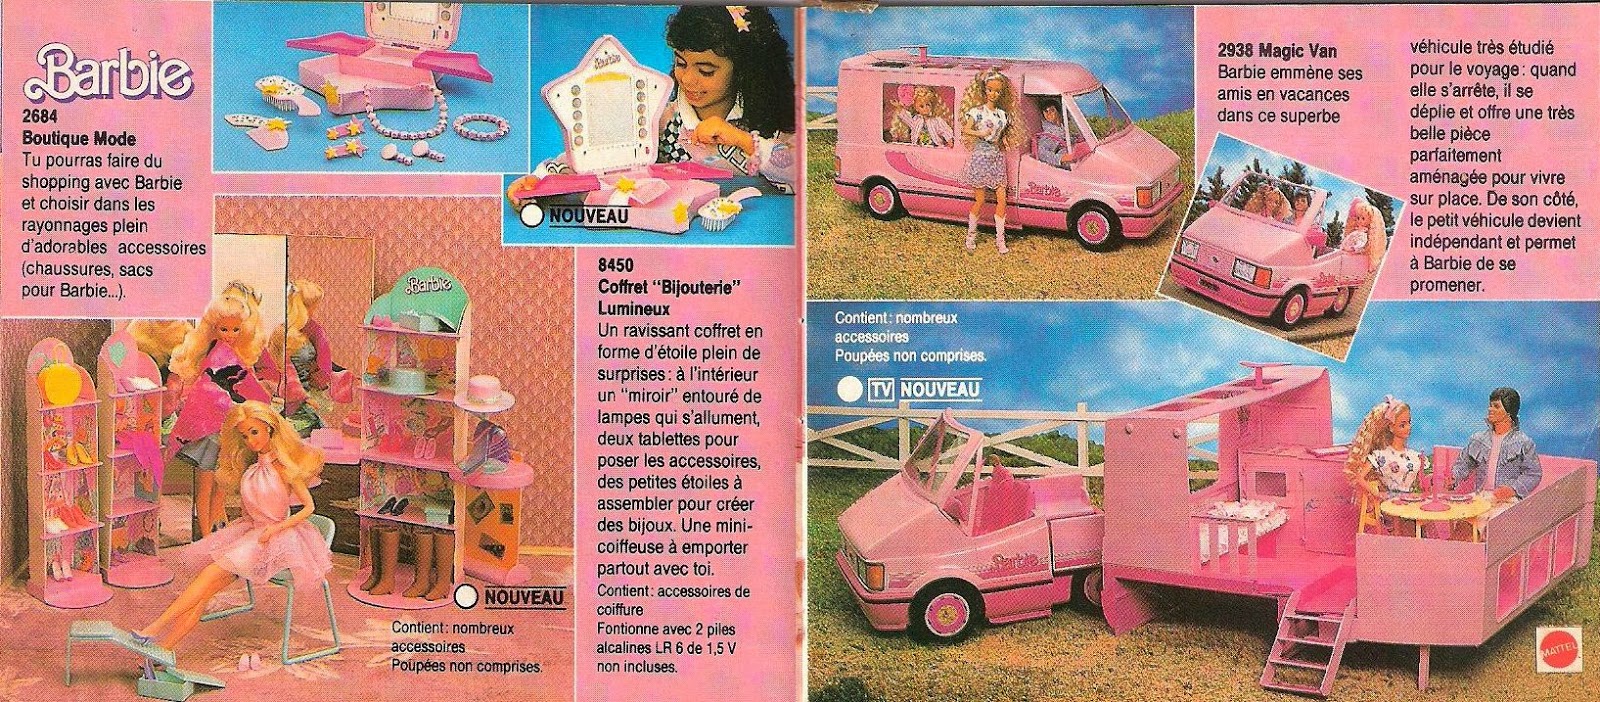 barbie magic van